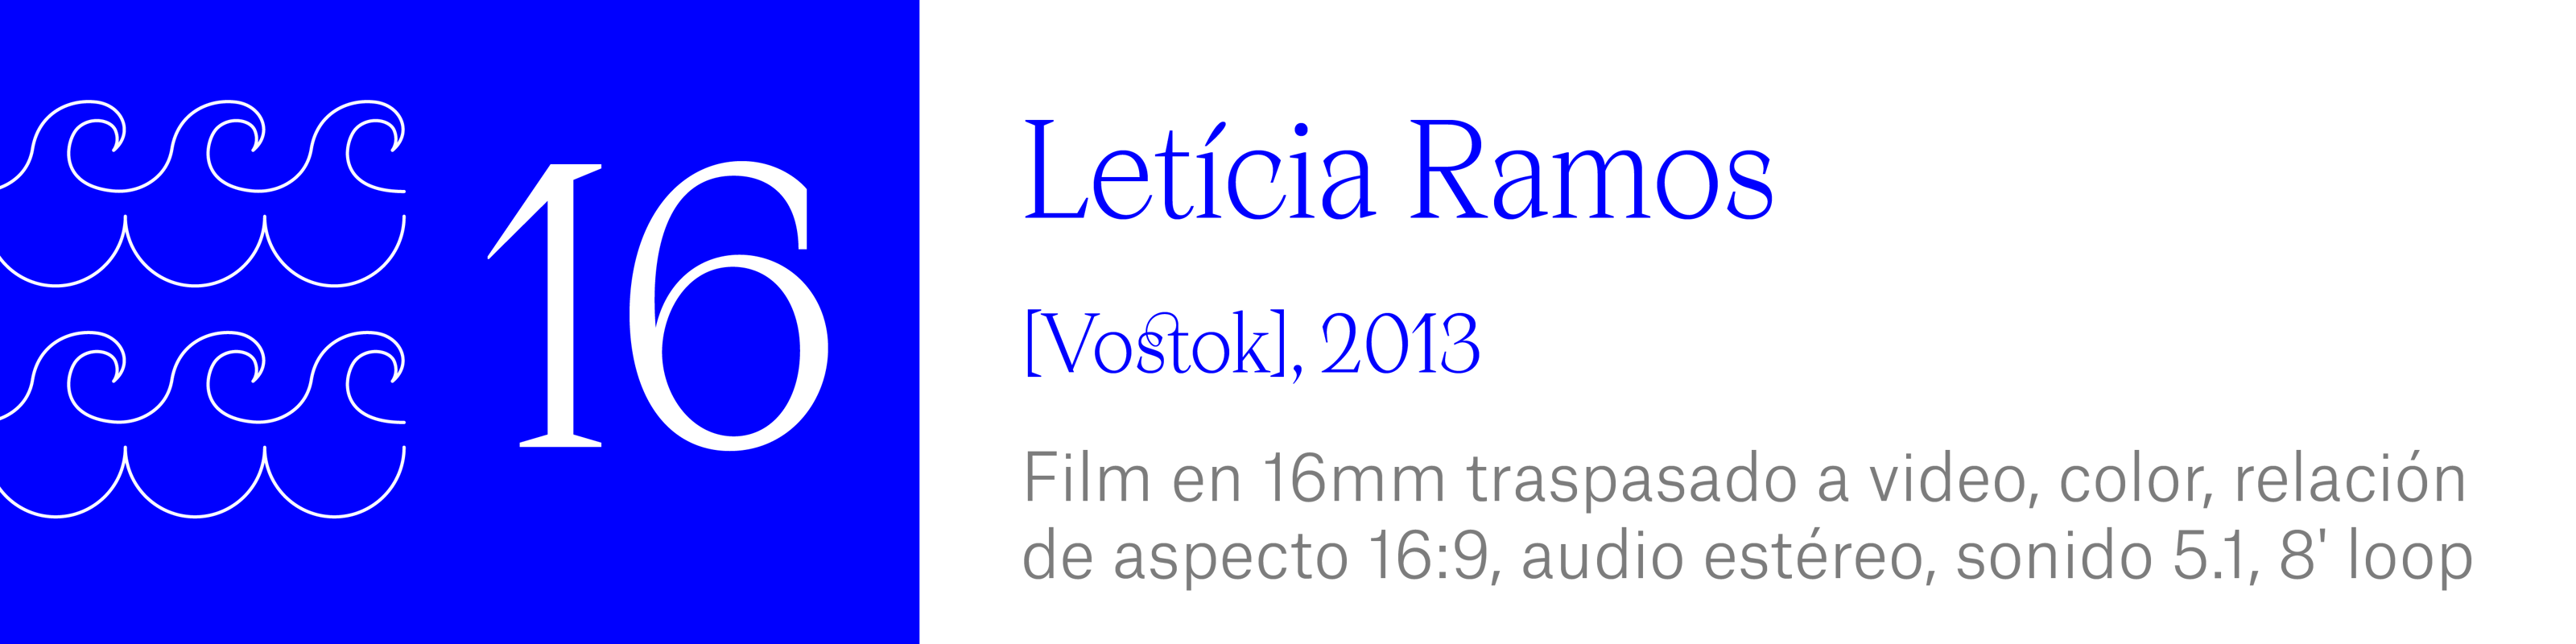 The Wave (16) - Letícia Ramos - [Vostok], 2013. Film en 16mm traspasado a video, color, relaciónde aspecto 16:9, audio estéreo, sonido 5.1, 8 minutos, loop.